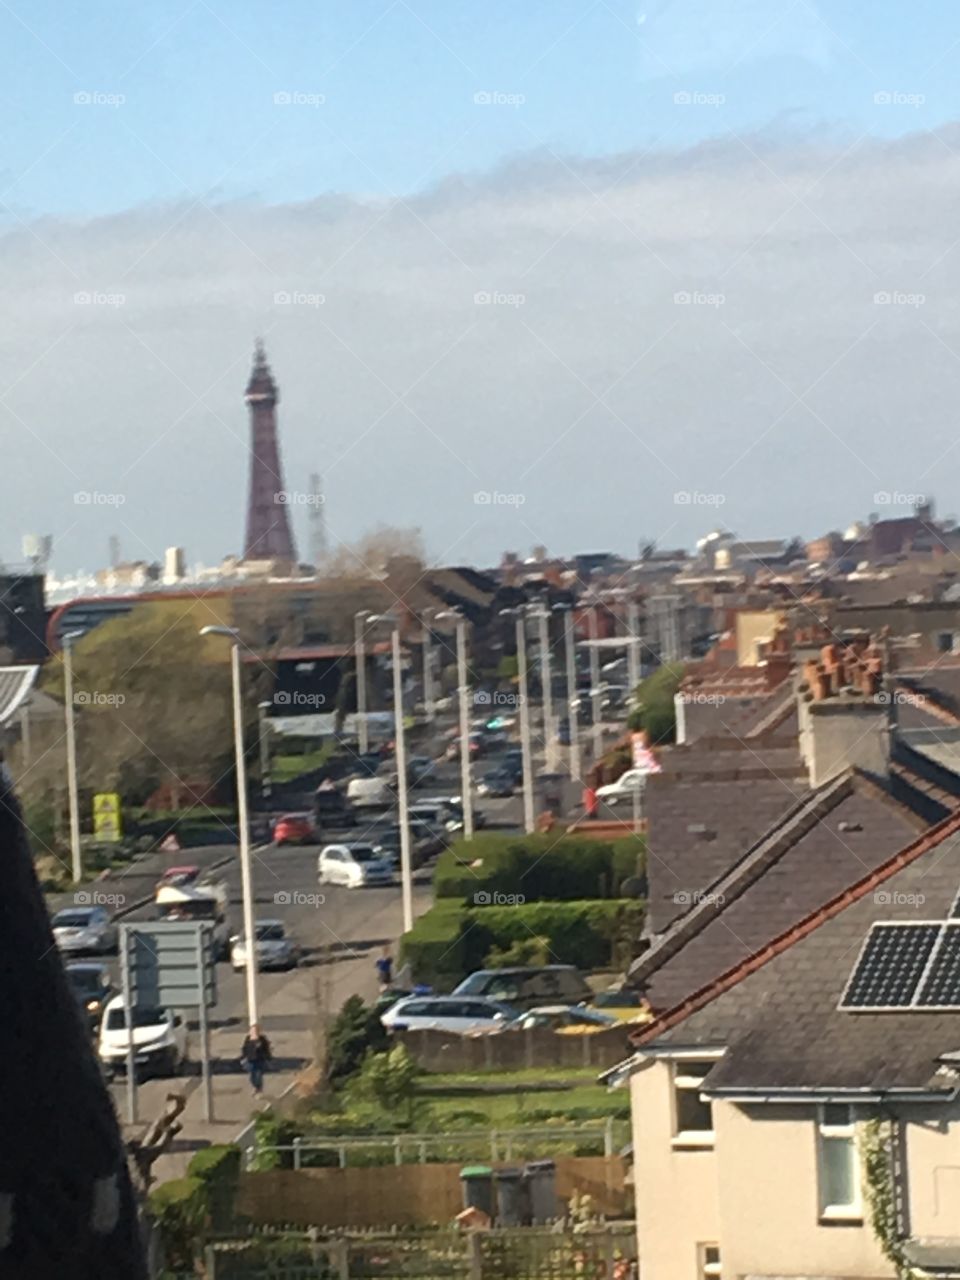 Blackpool skyline